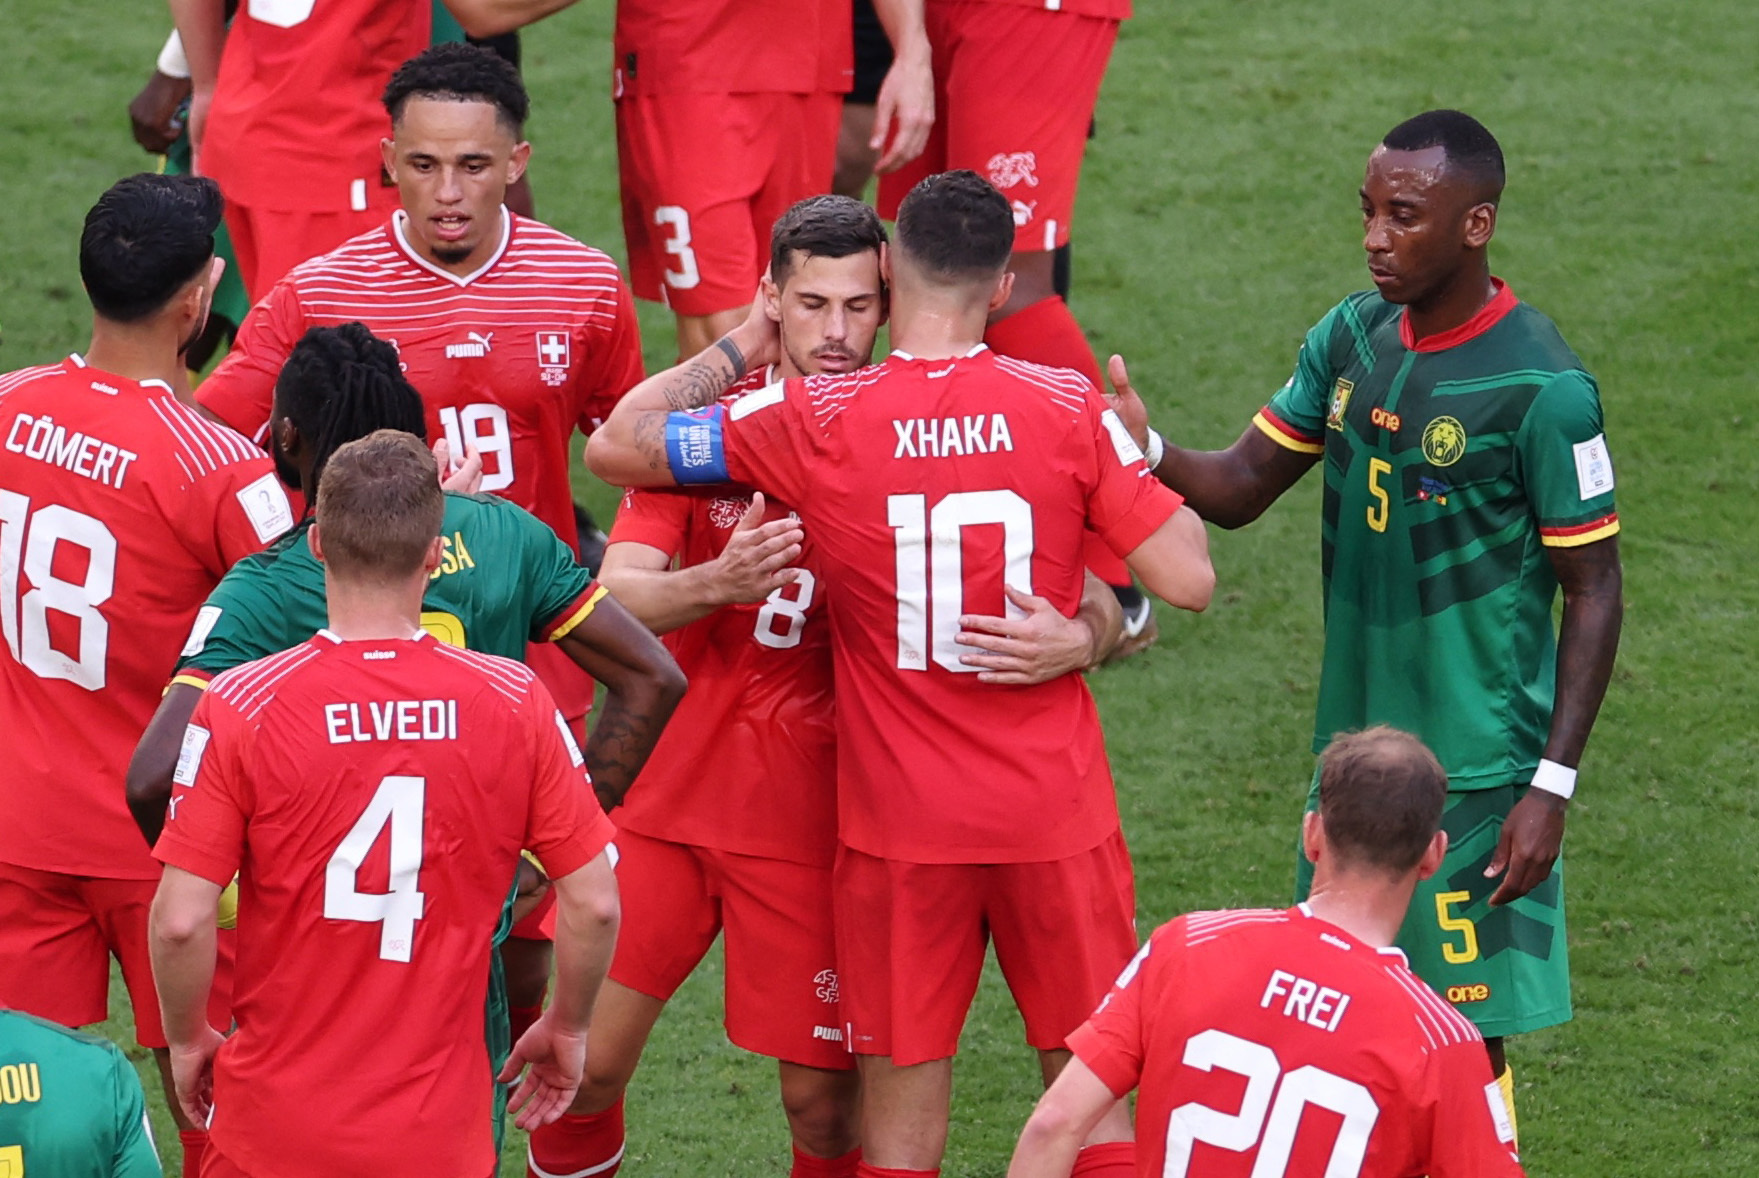 Suiza se impuso en su debut ante Camerún y en la siguiente fecha se enfrentarán a Brasil, una de las grandes favoritas. REUTERS/Marko Djurica